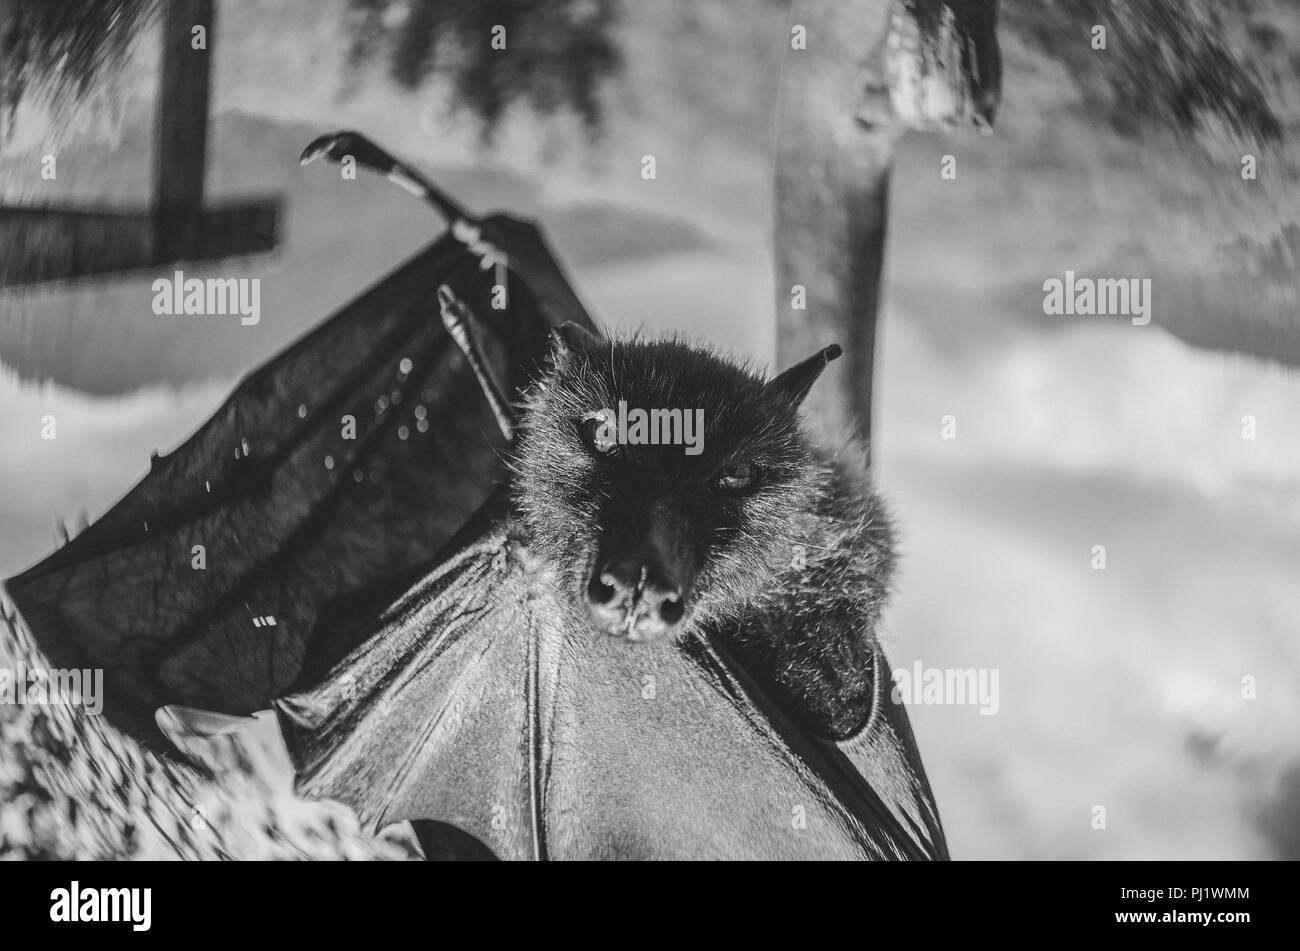 Schwarz-weiß-Porträt eines riesigen Obst Bat/Flying Fox hängen; Schwarz/Weiß-Serie von Porträts einer Frucht bat oder Flying Fox Stockfoto